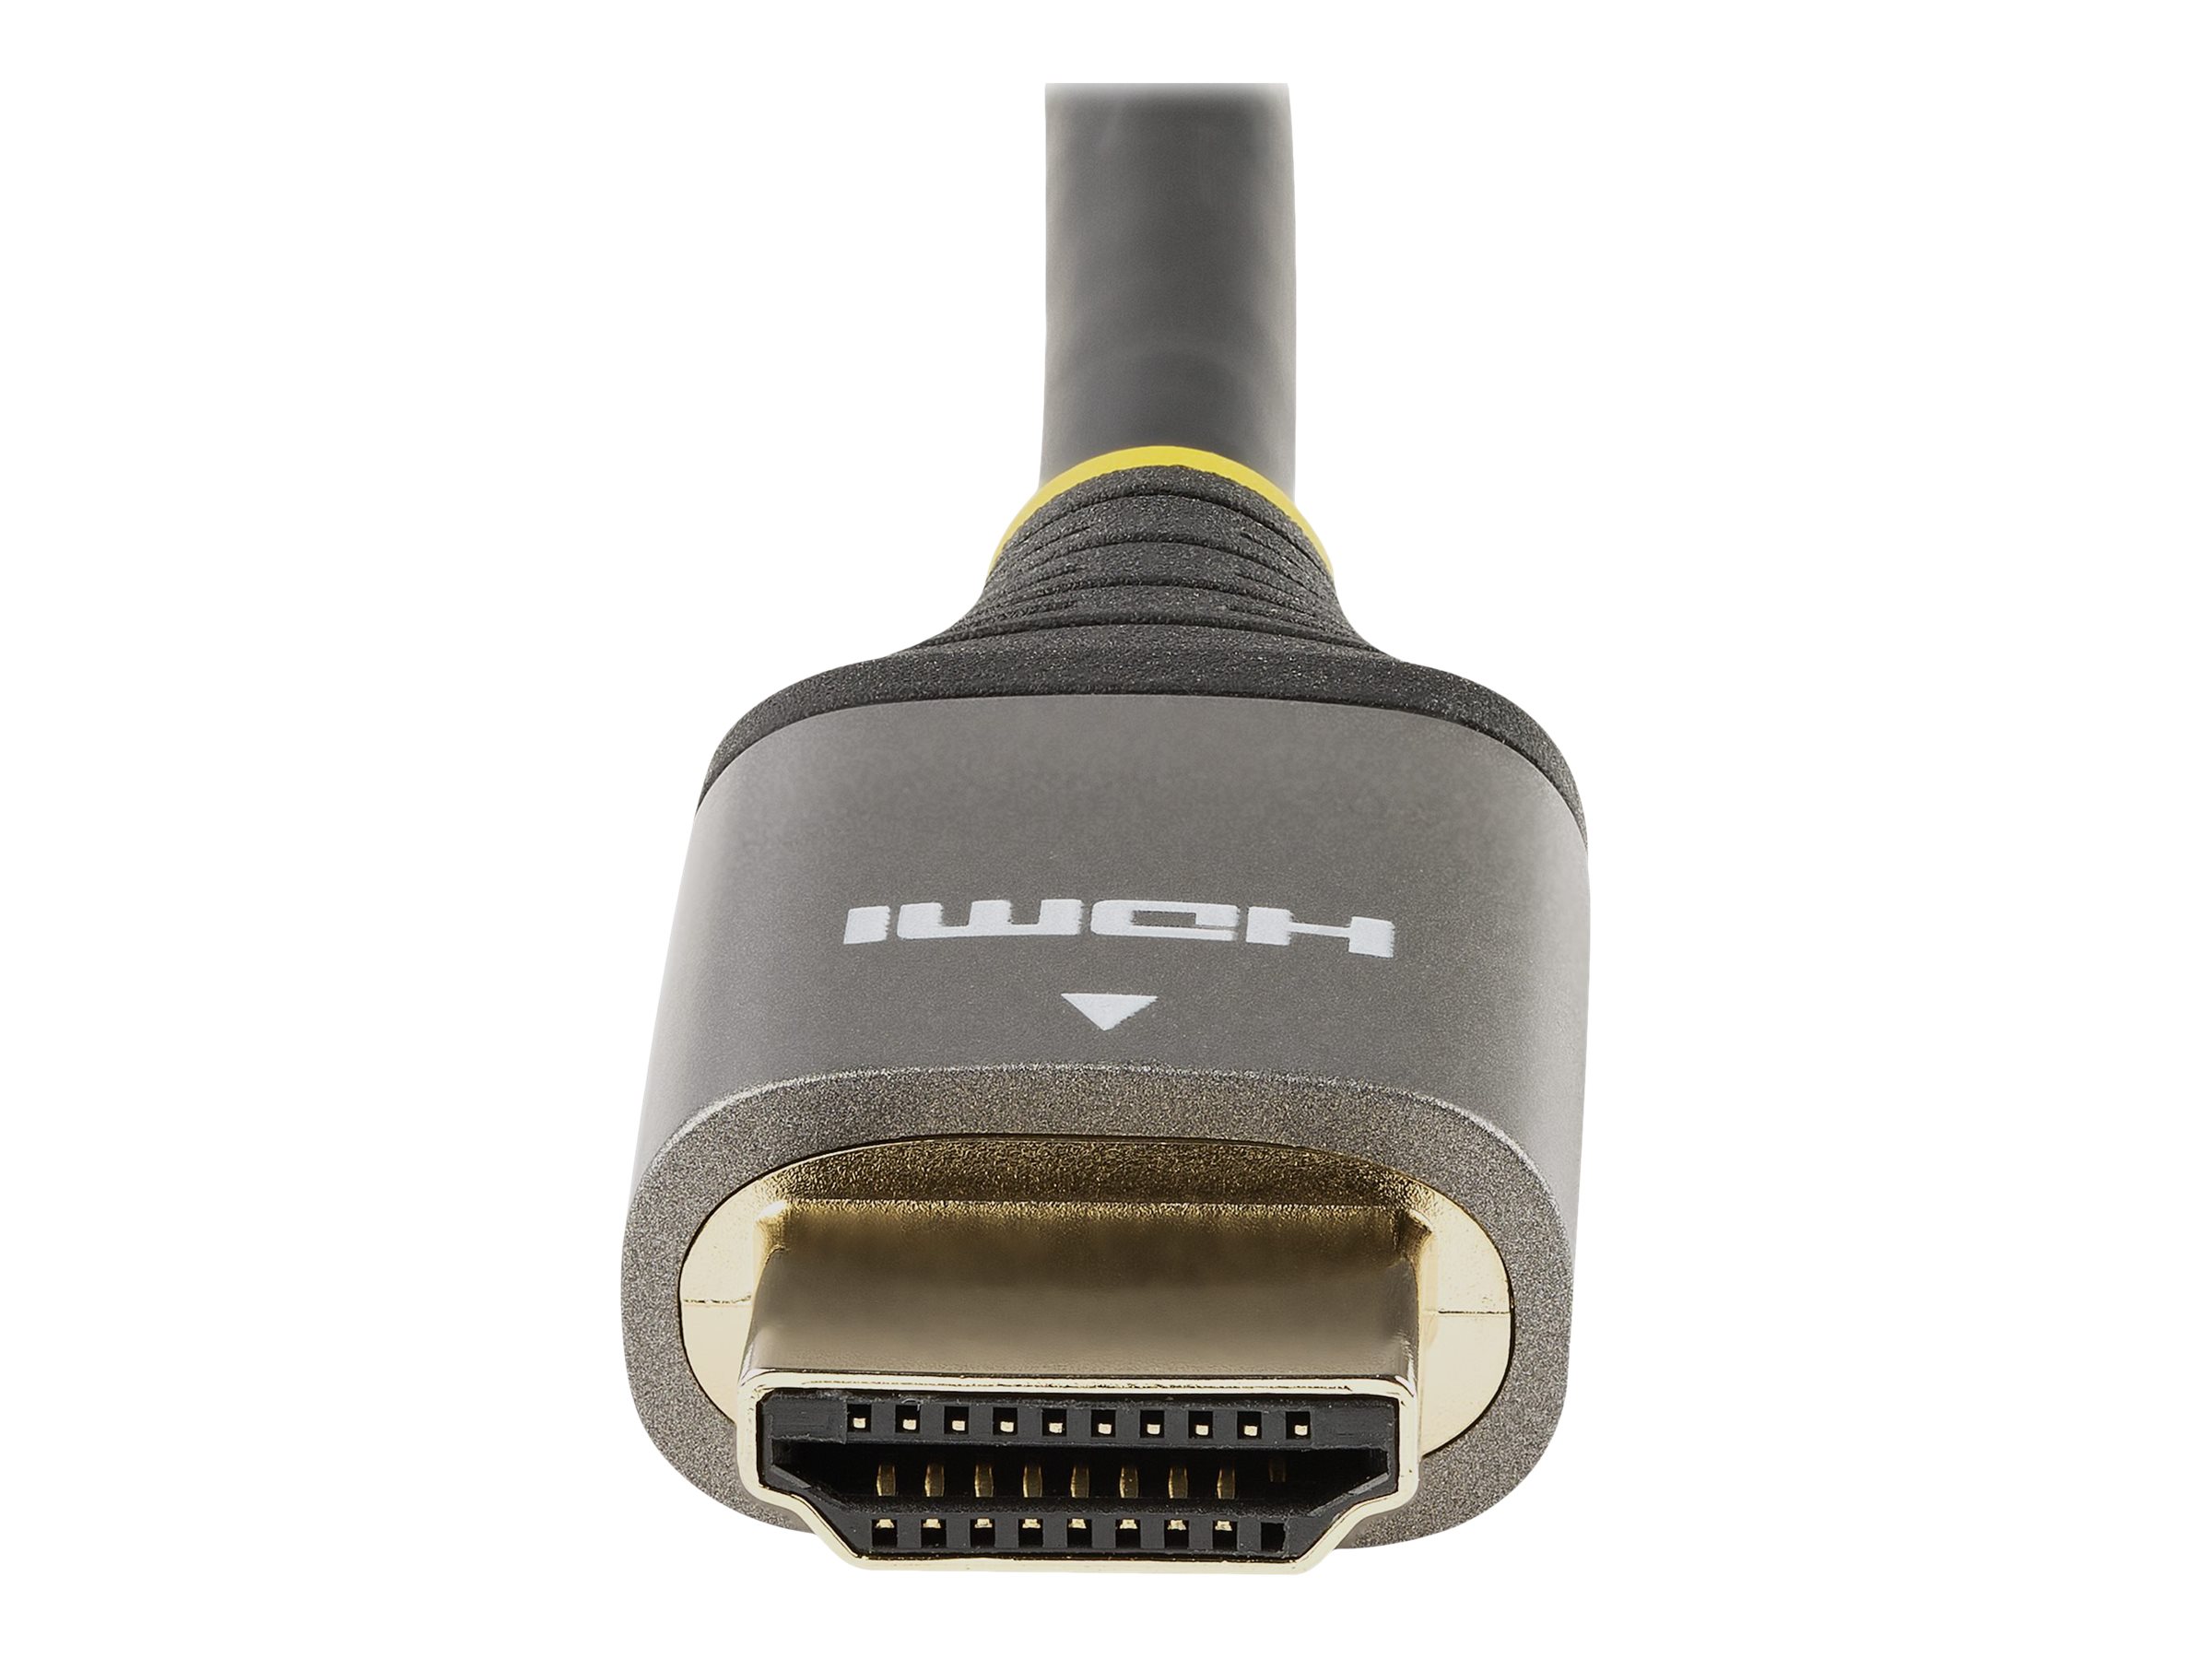 StarTech.com 3m Premium zertifiziertes HDMI 2.0 Kabel - High Speed Ultra HD 4K 60Hz HDMI Kabel mit Ethernet - HDR10, ARC - UHD HDMI Videokabel - Für UHD Monitore, TVs, Displays - M/M (HDMMV3M) - HDMI-Kabel mit Ethernet - 3 m